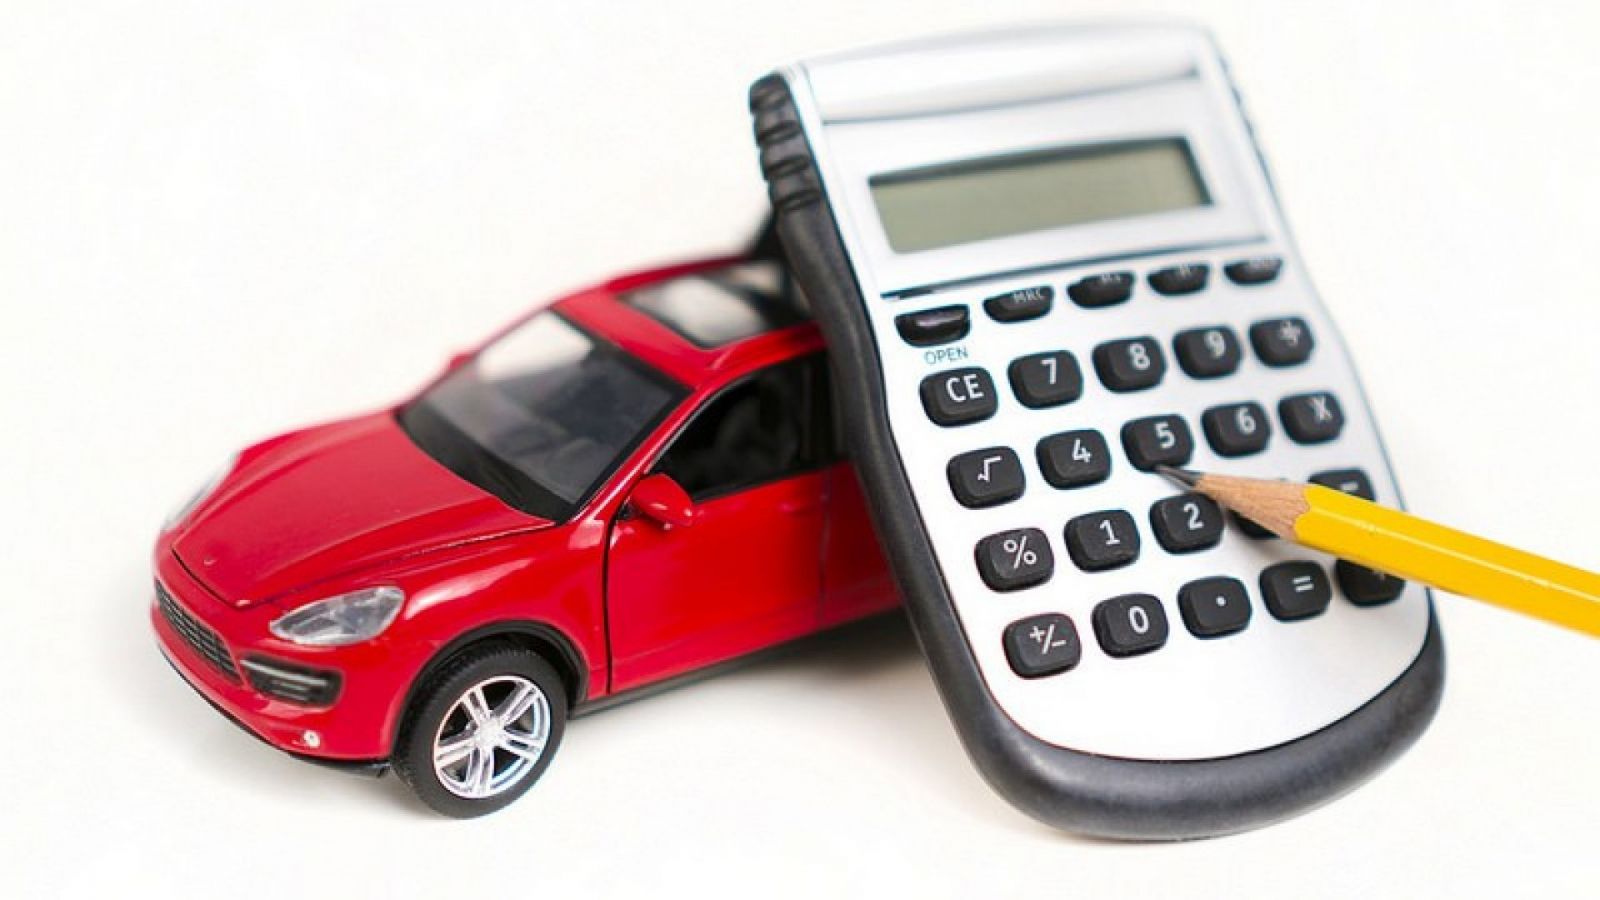 Lãi suất mua ô tô trả góp cuối năm – Cần toan tính kỹ lưỡng